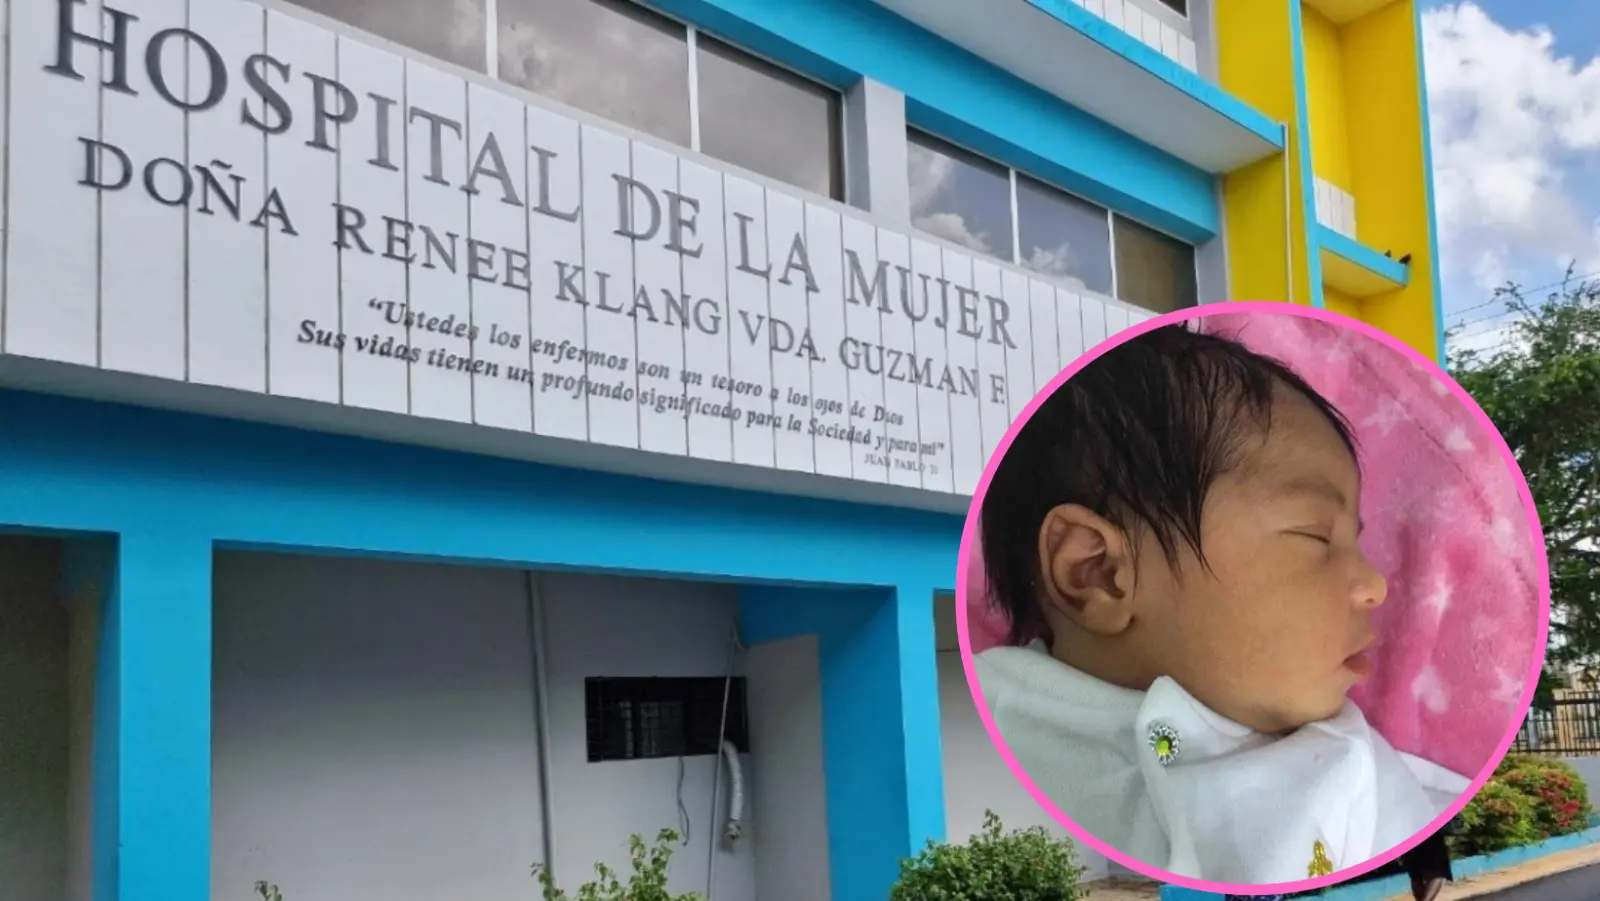 Recuperan niña sustraída en Maternidad Reneé Klang de Guzmán